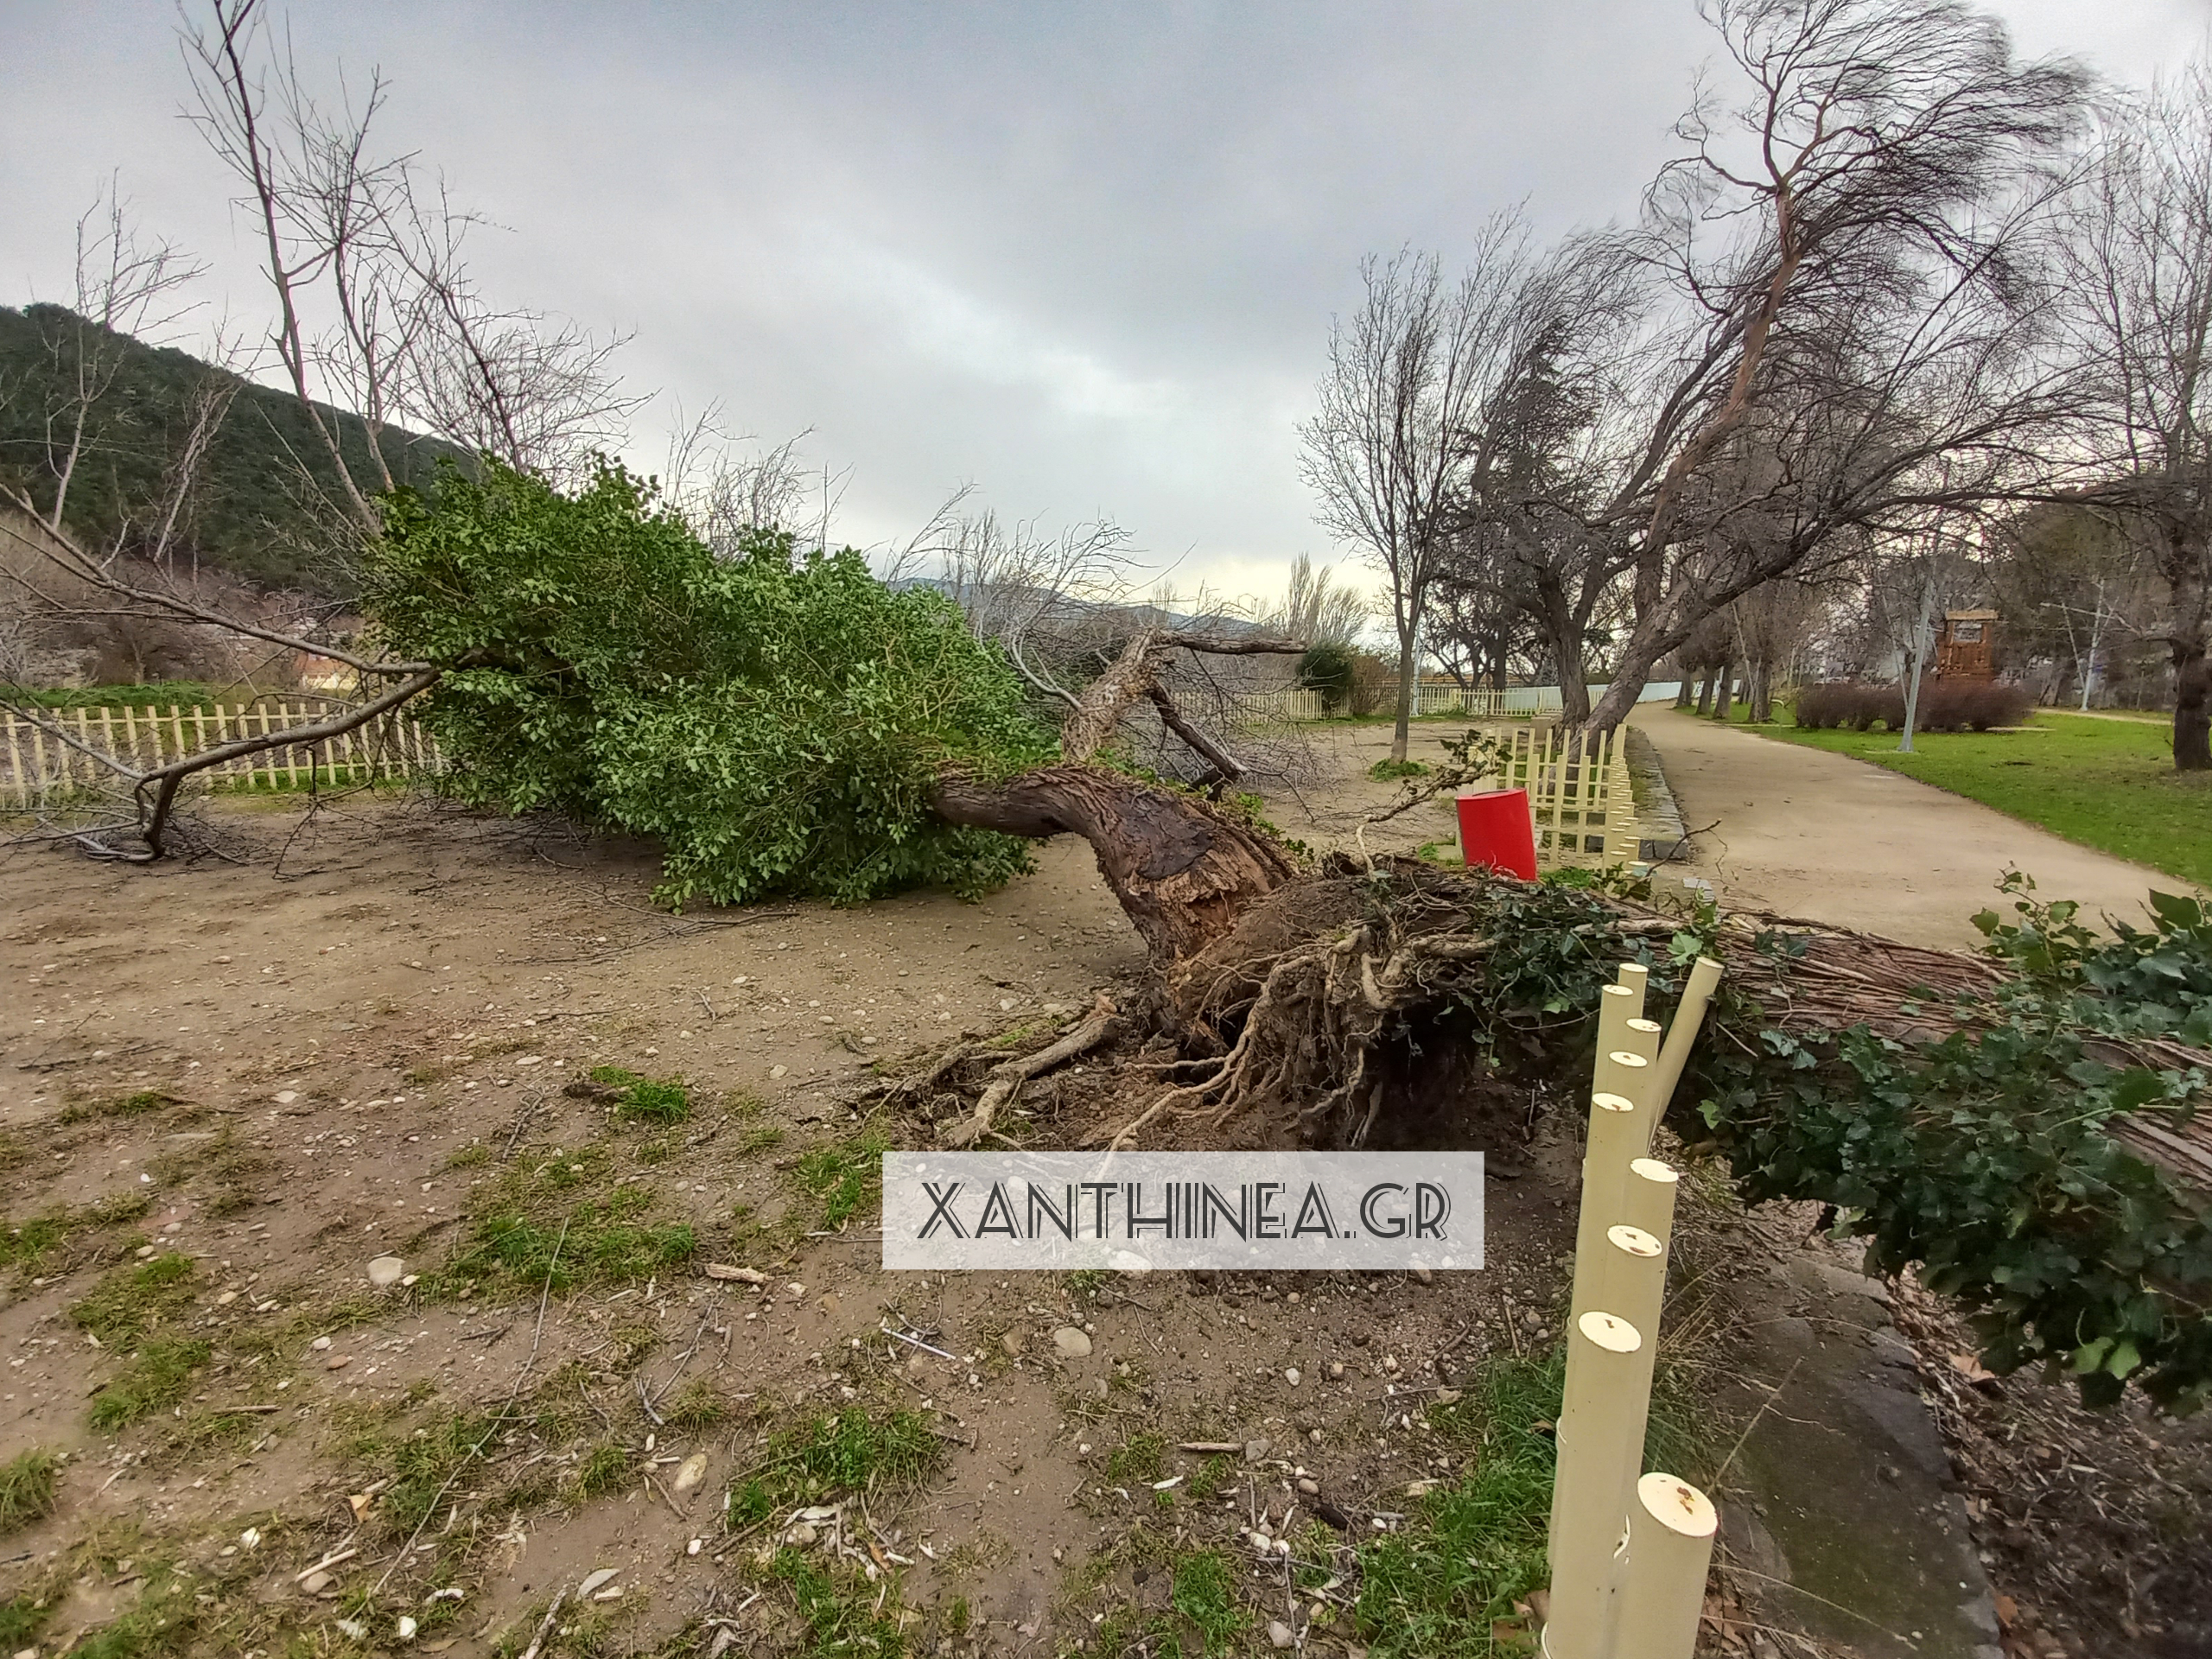 Καιρός – Ξάνθη: Καταστροφές από την κακοκαιρία «Διομήδης» – Έπεσαν δέντρα, τοίχος κατέστρεψε αυτοκίνητα